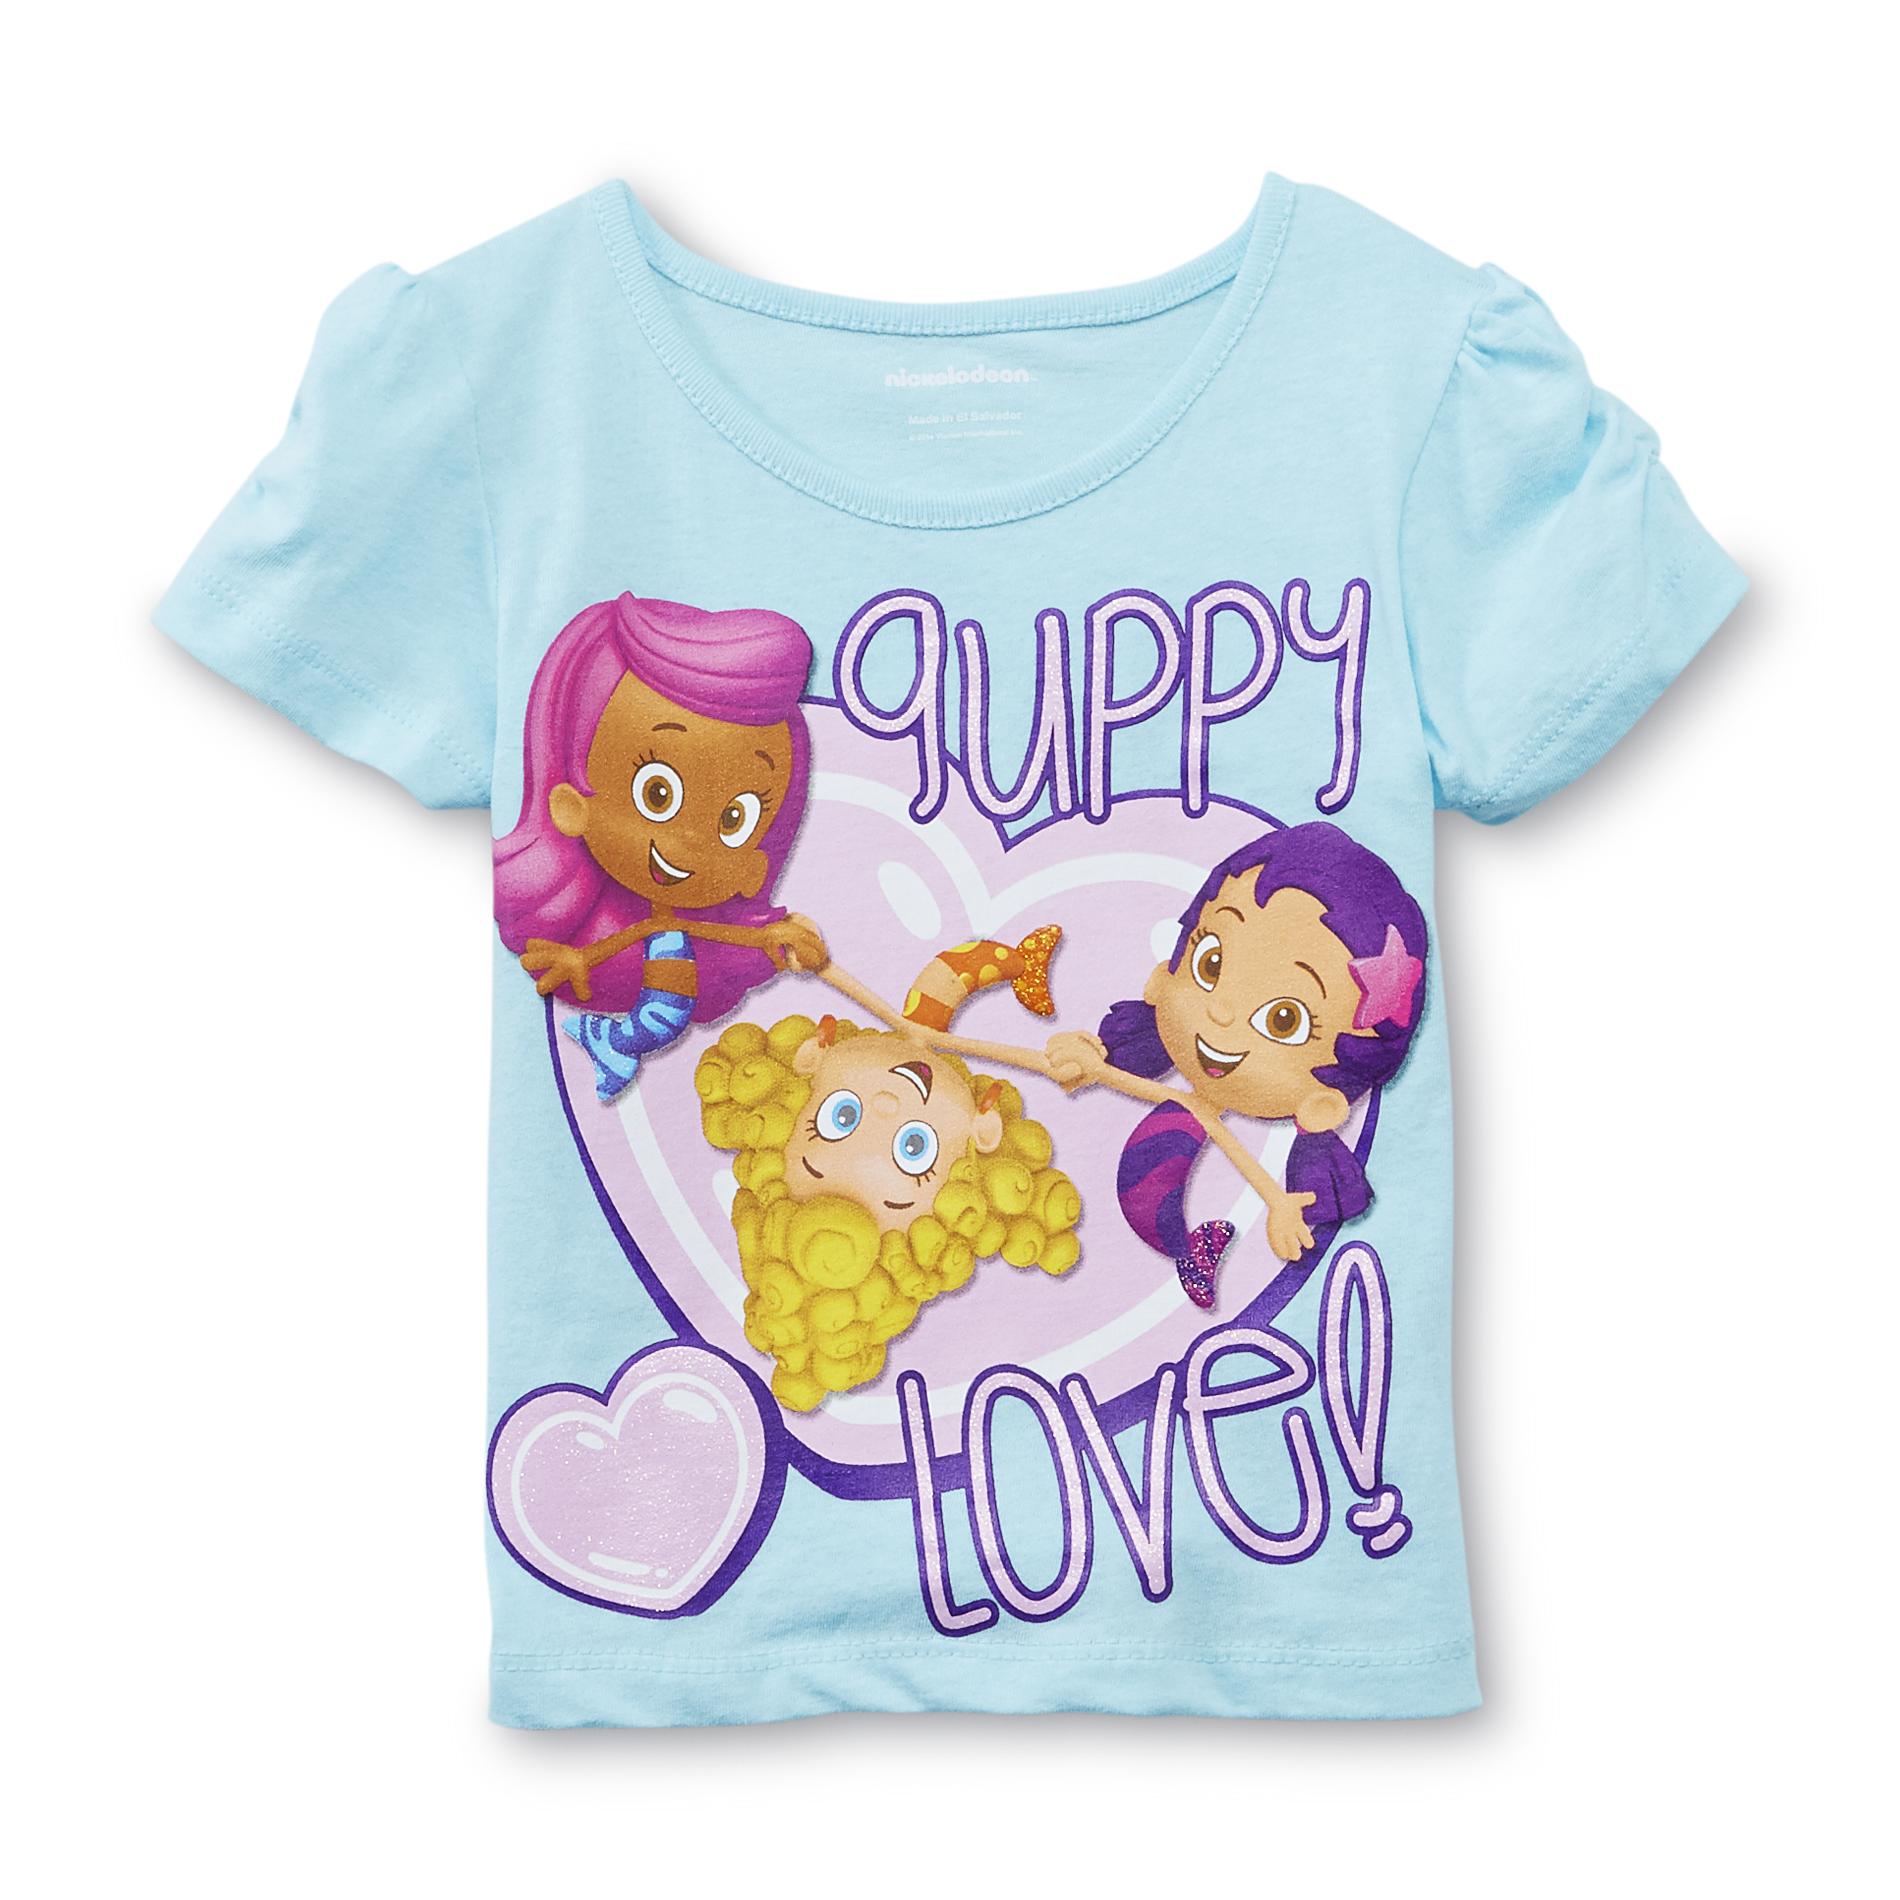 Nickelodeon Toddler Girl's Graphic T-Shirt